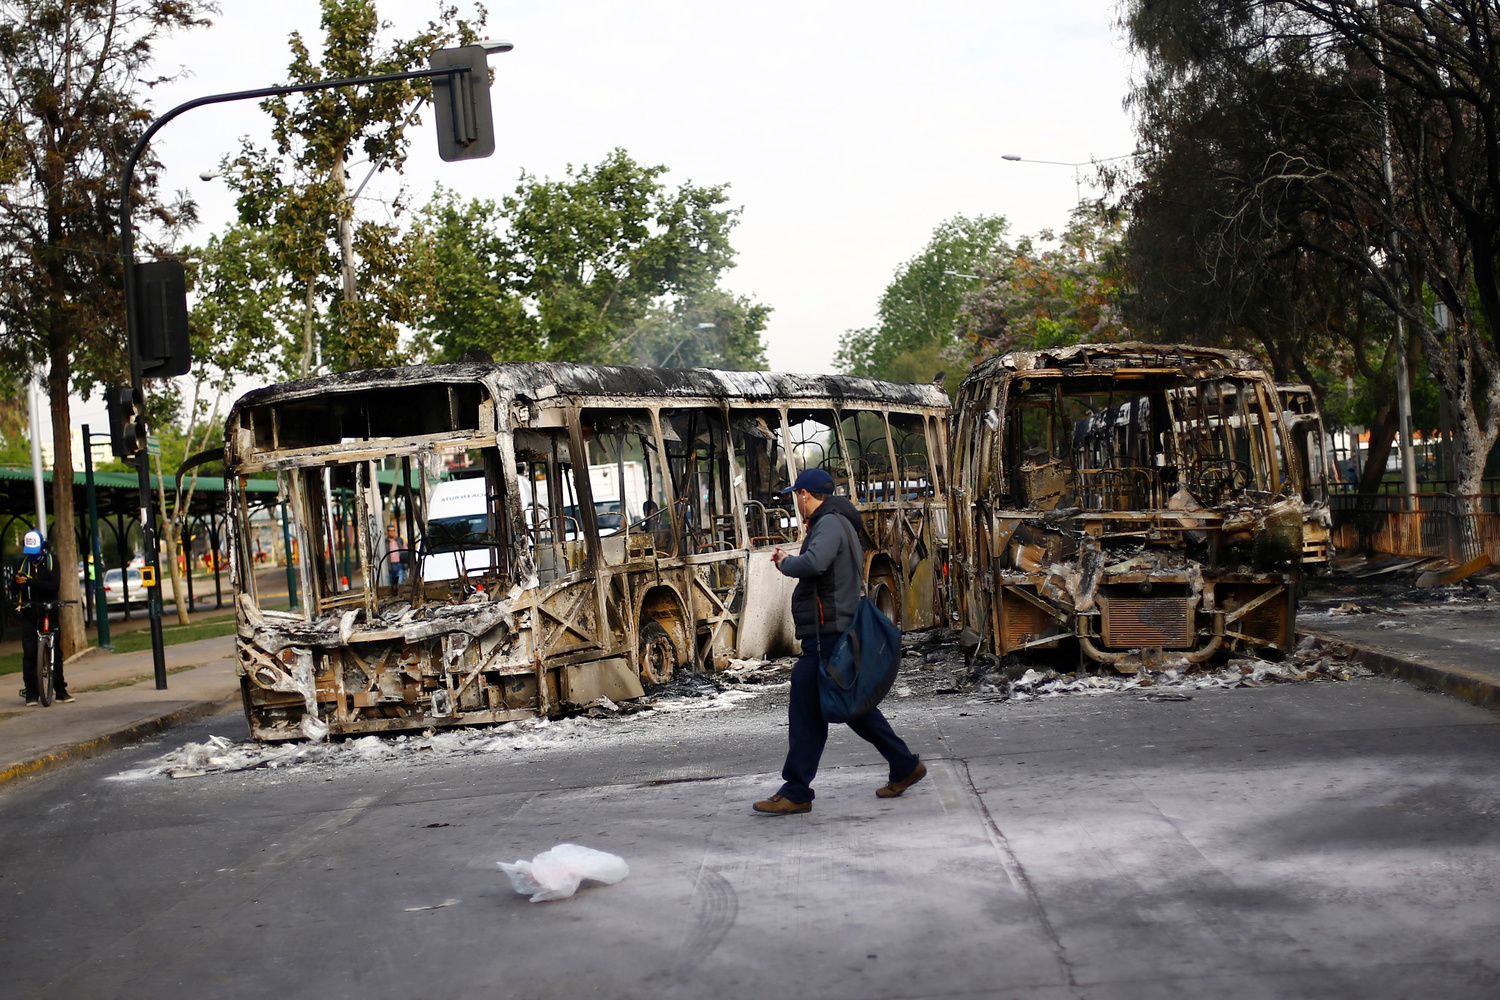 Un uomo cammina di fronte a due autobus bruciati dopo una protesta contro l'aumento dei prezzi dei biglietti della metropolitana a Santiago, Cile, 19 ottobre 2019. REUTERS/Edgard Garrido